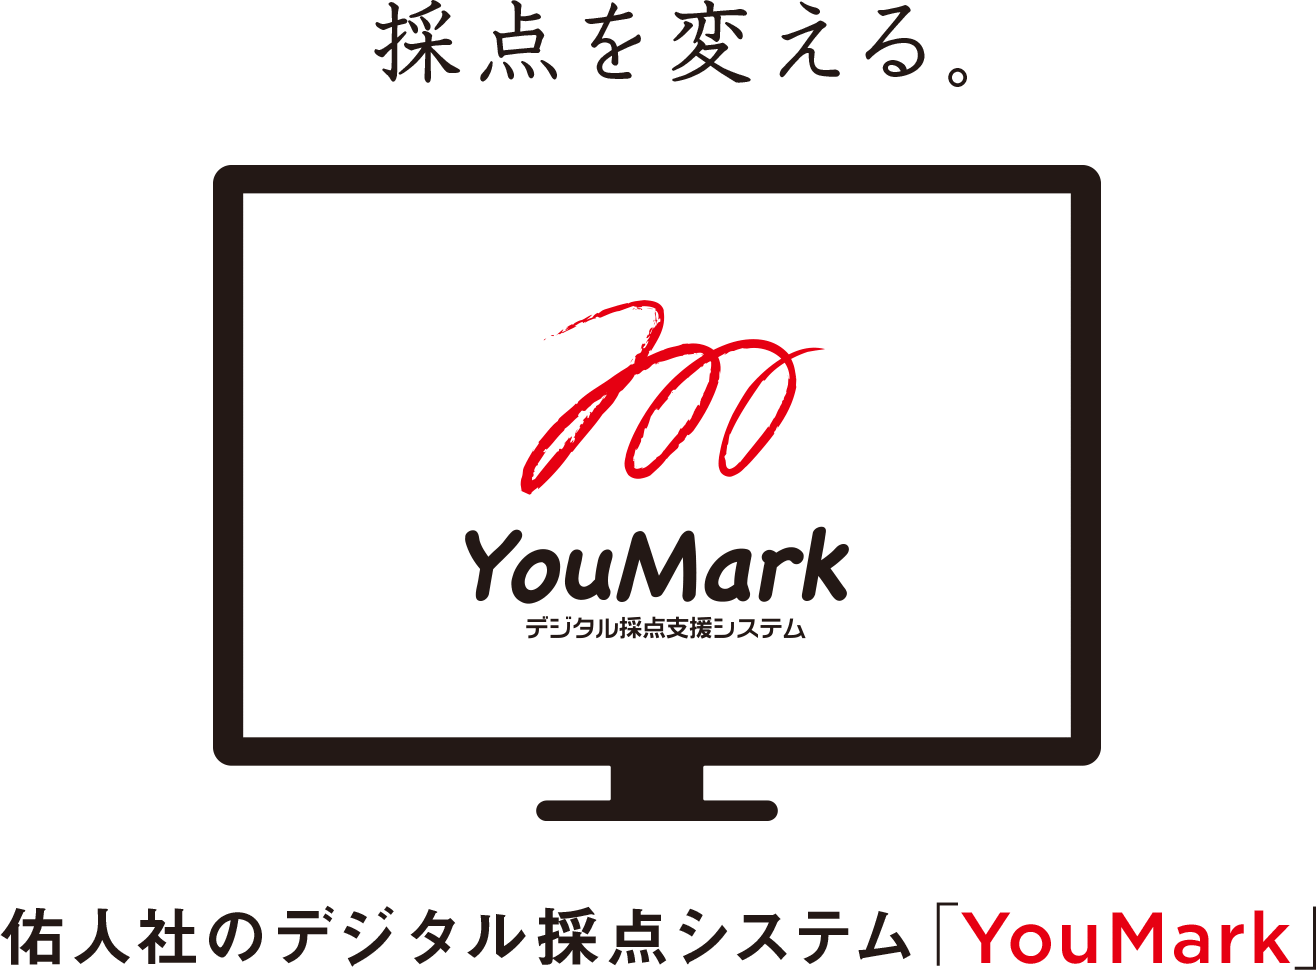 採点を変える 佑人社のデジタル採点システム「YouMark」